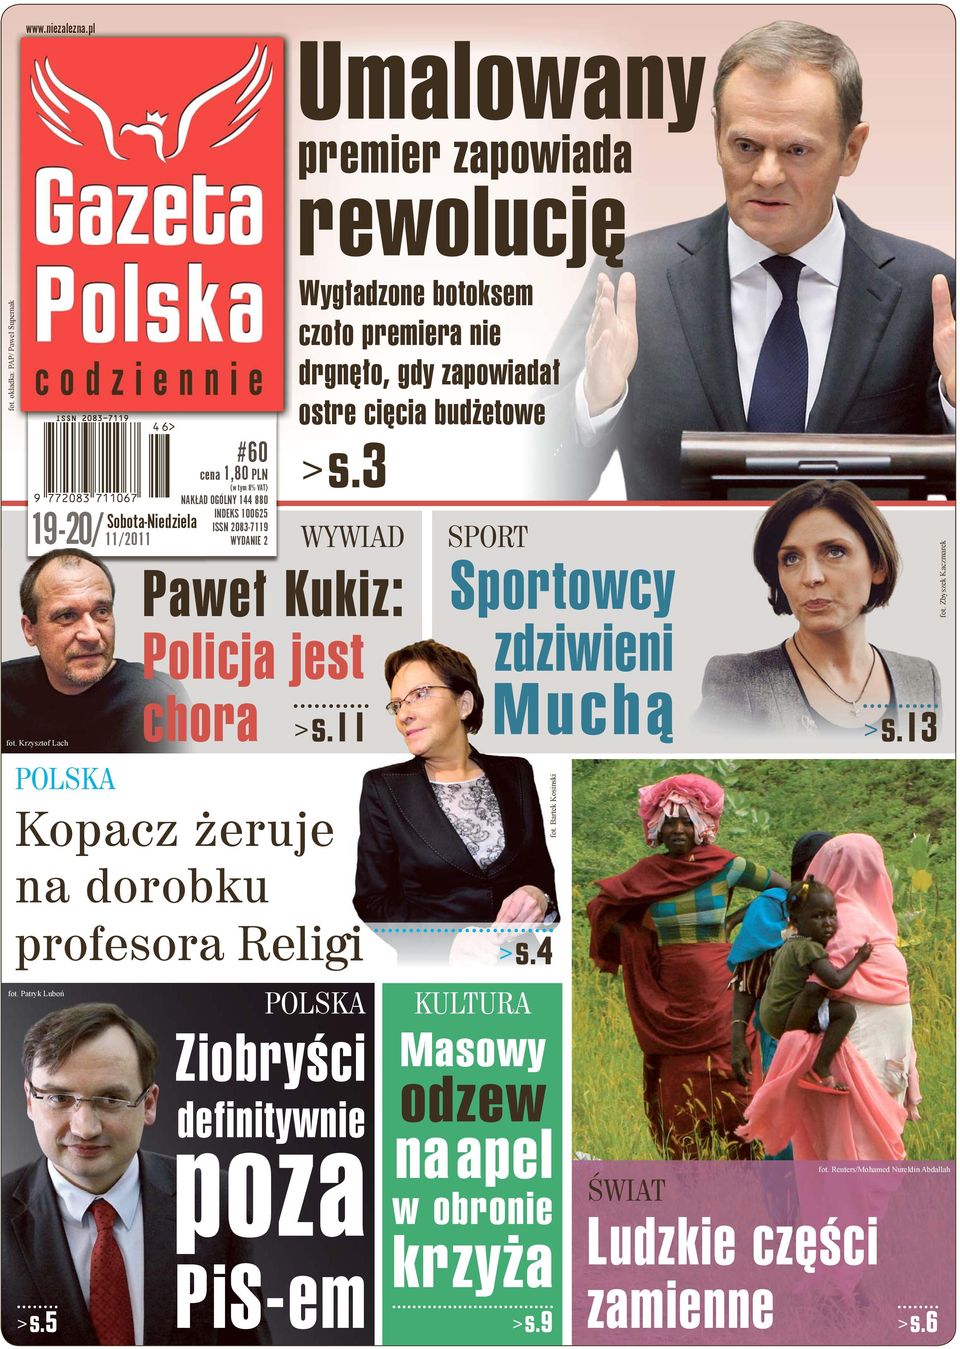 11 POLSKA Ziobryści definitywnie poza PiS-em rewolucję Wygładzone botoksem czoło premiera nie drgnęło, gdy zapowiadał ostre cięcia budżetowe > s.3 > s.